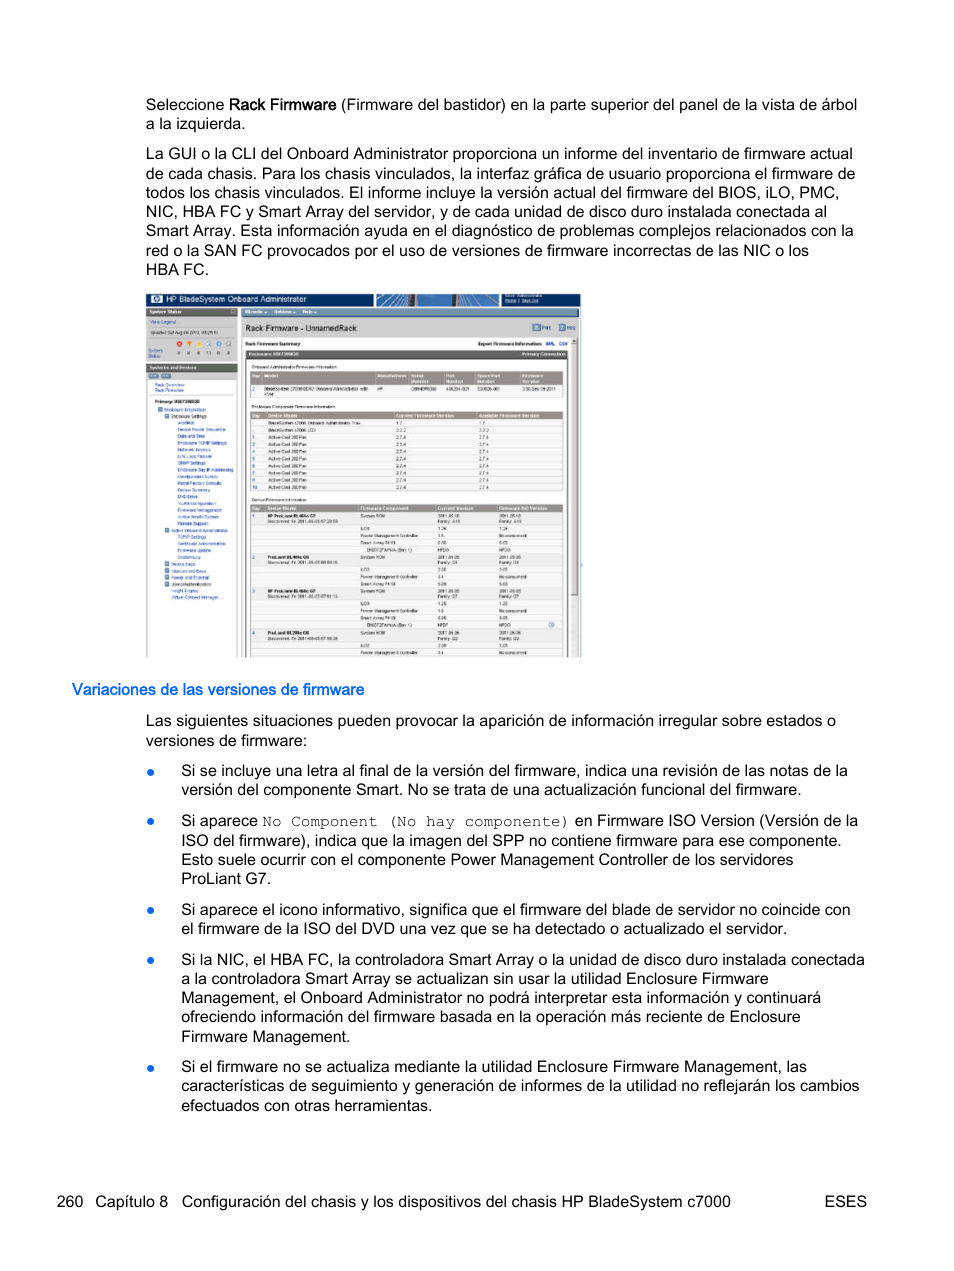 Variaciones de las versiones de firmware | HP Onboard Administrator Manual del usuario | Página 269 / 404